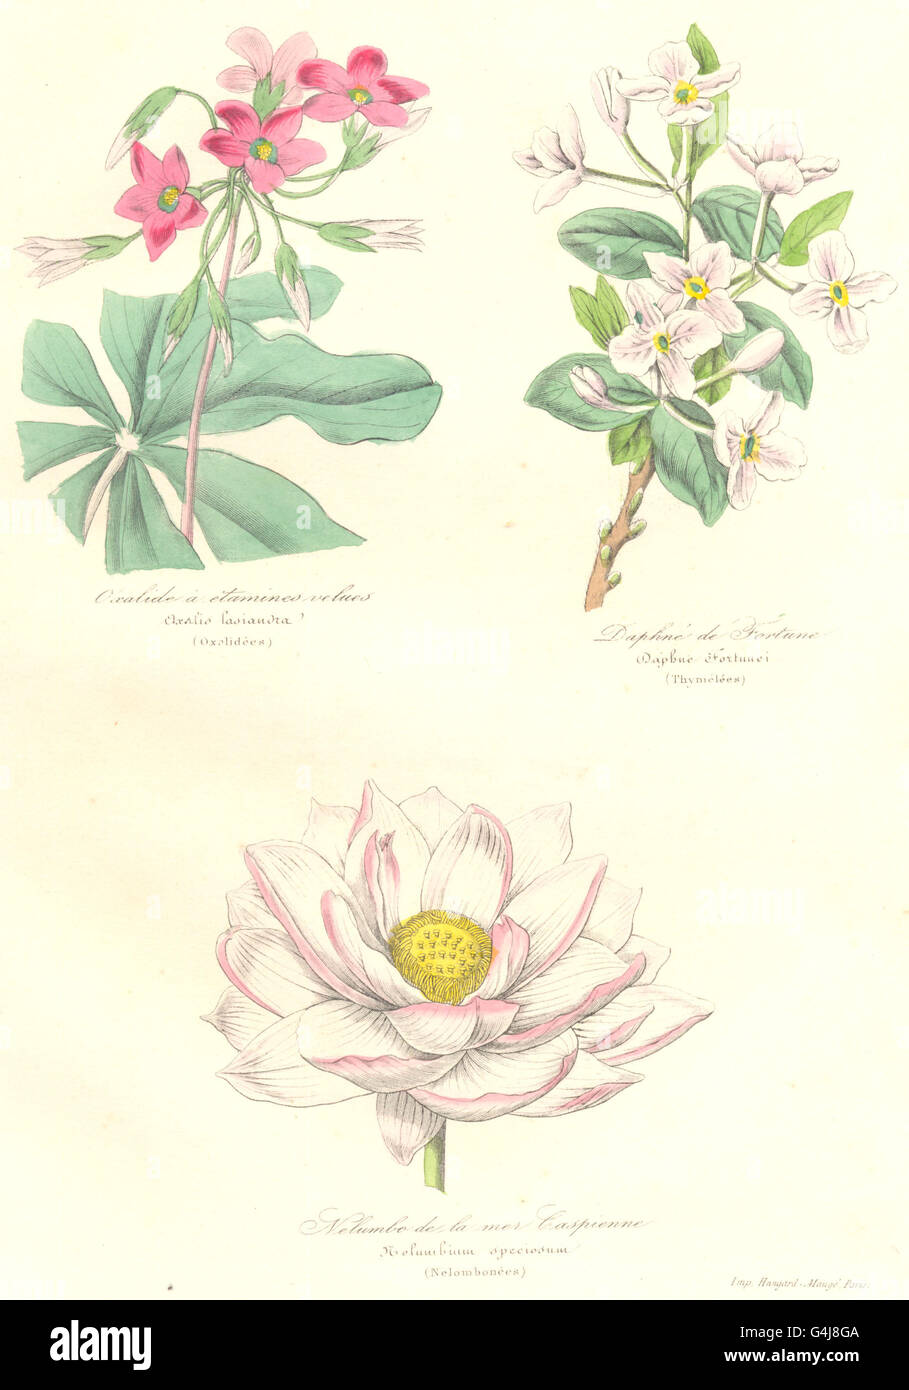 BOTANICALS: oxalis lasiandra; daphne fortunei; nelumbium speciosum, print 1852 Stock Photo